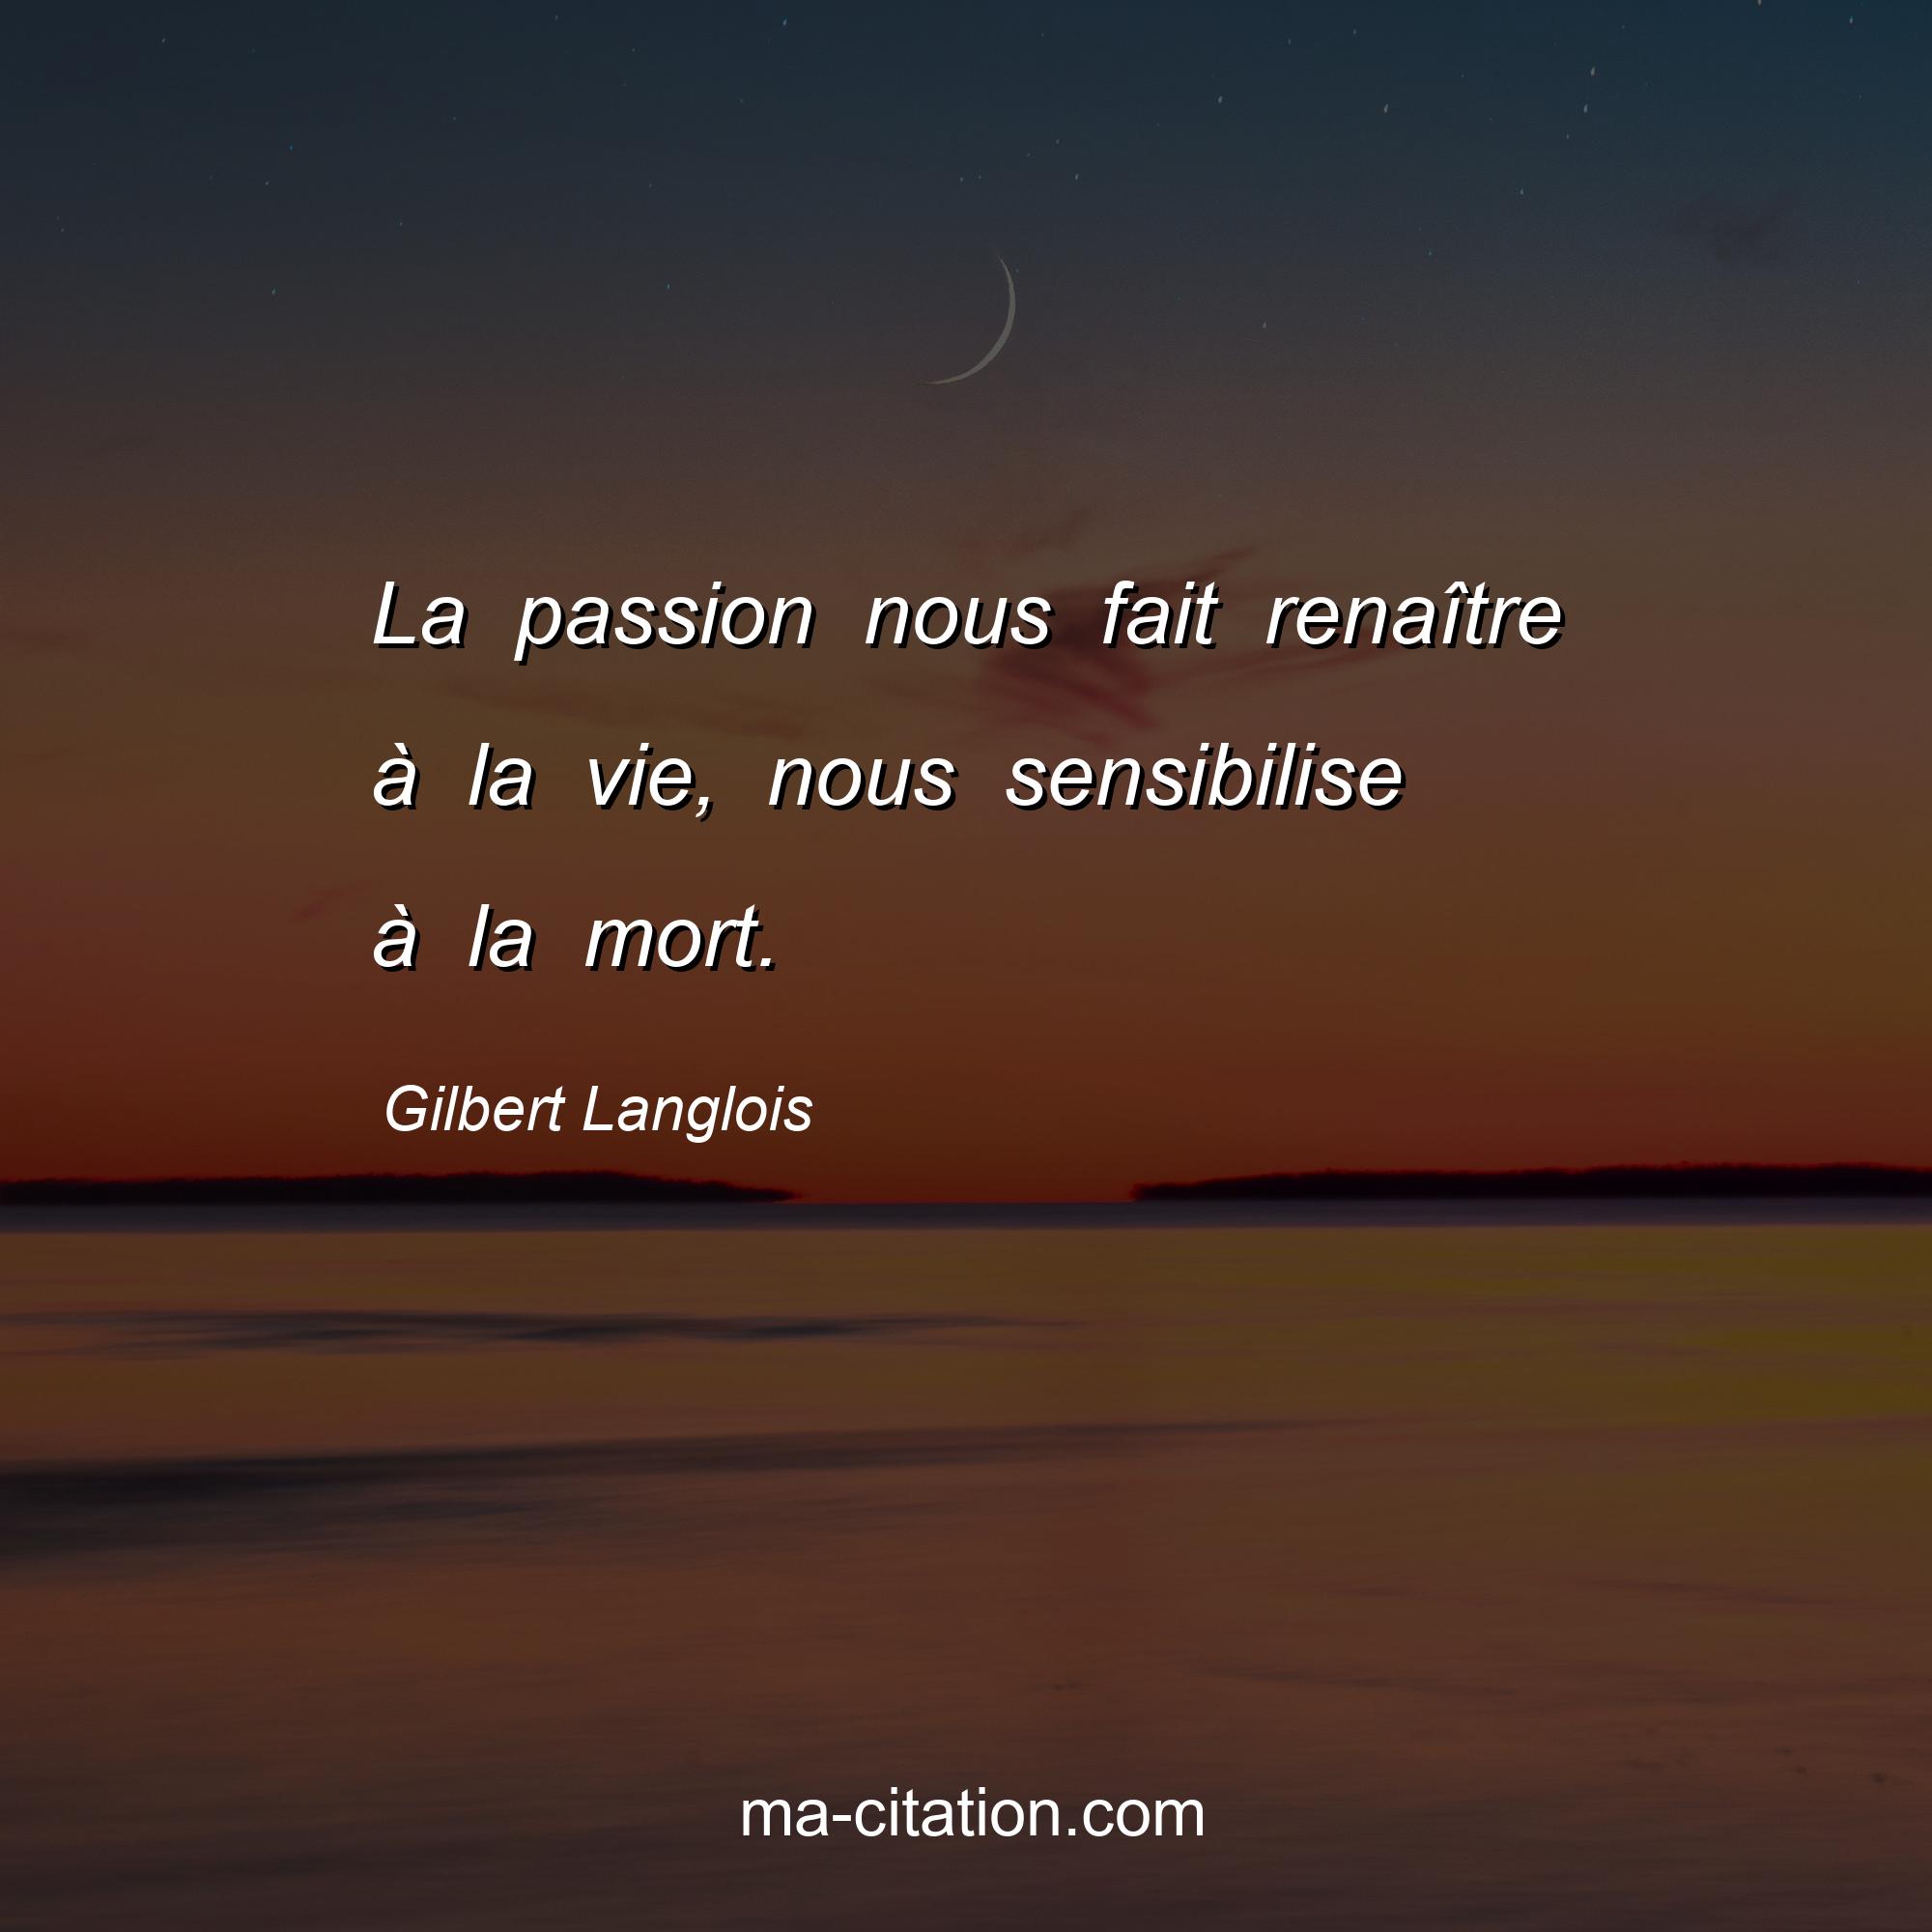 Gilbert Langlois : La passion nous fait renaître à la vie, nous sensibilise à la mort.